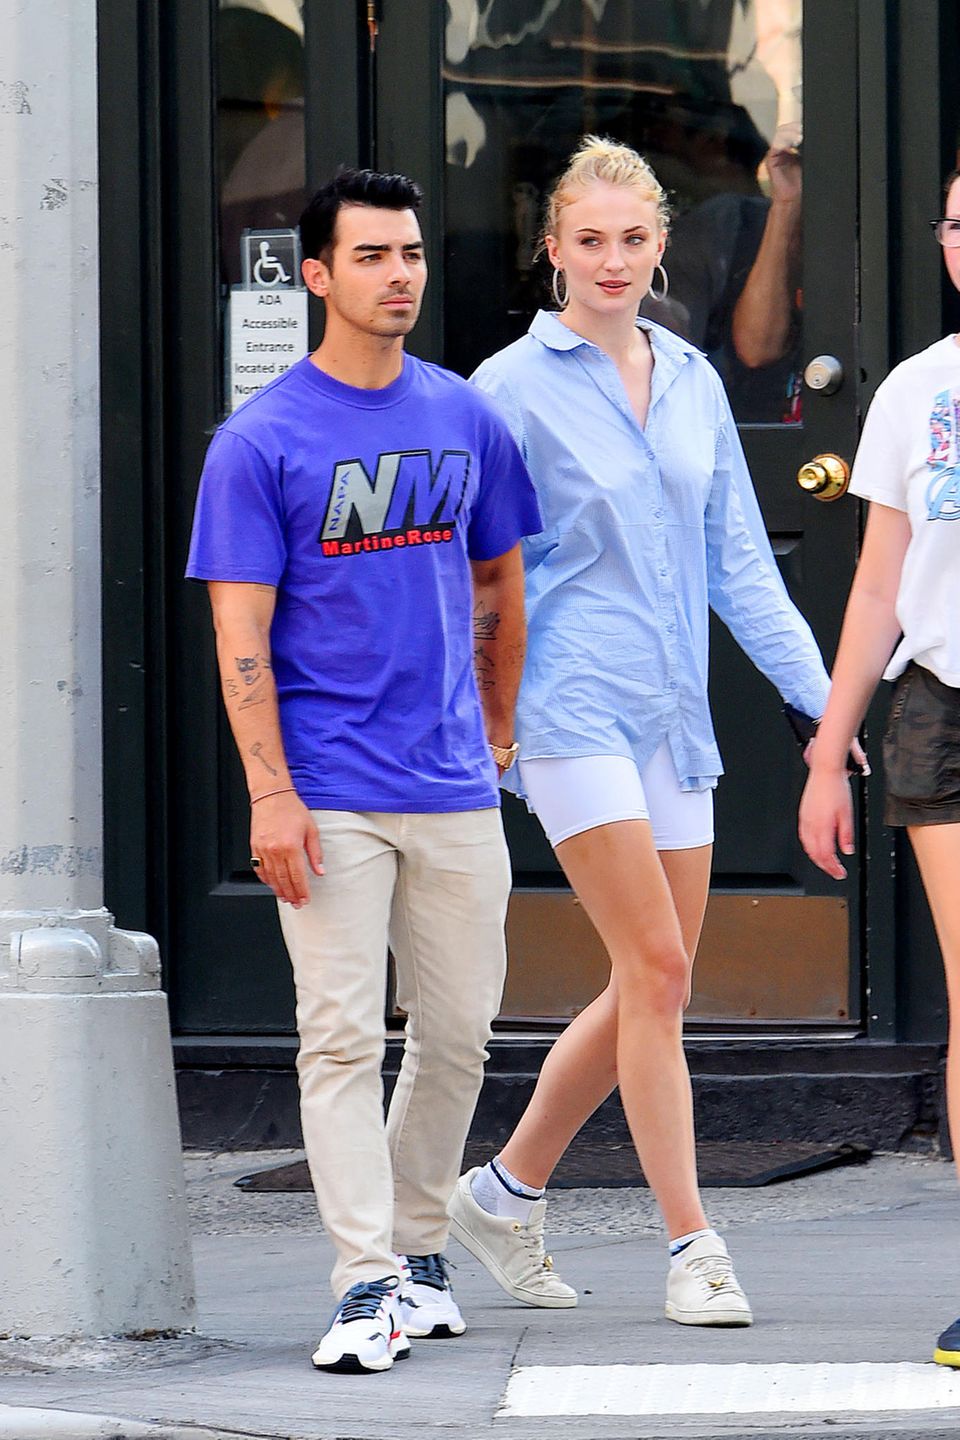 Einen Tag nach Joe Jonas' 30. Geburtstag zeigt sich der Musiker mit seiner Ehefrau Sophie Turner leger und sportlich in New York. Die 23-Jährige trägt eine hellblaue Radlershorts – dem Sommertrend schlechthin – und farblich abgestimmter Oversized-Bluse. Auch der "Jonas Brothers"-Sänger hält sein Outfit sportlich. 